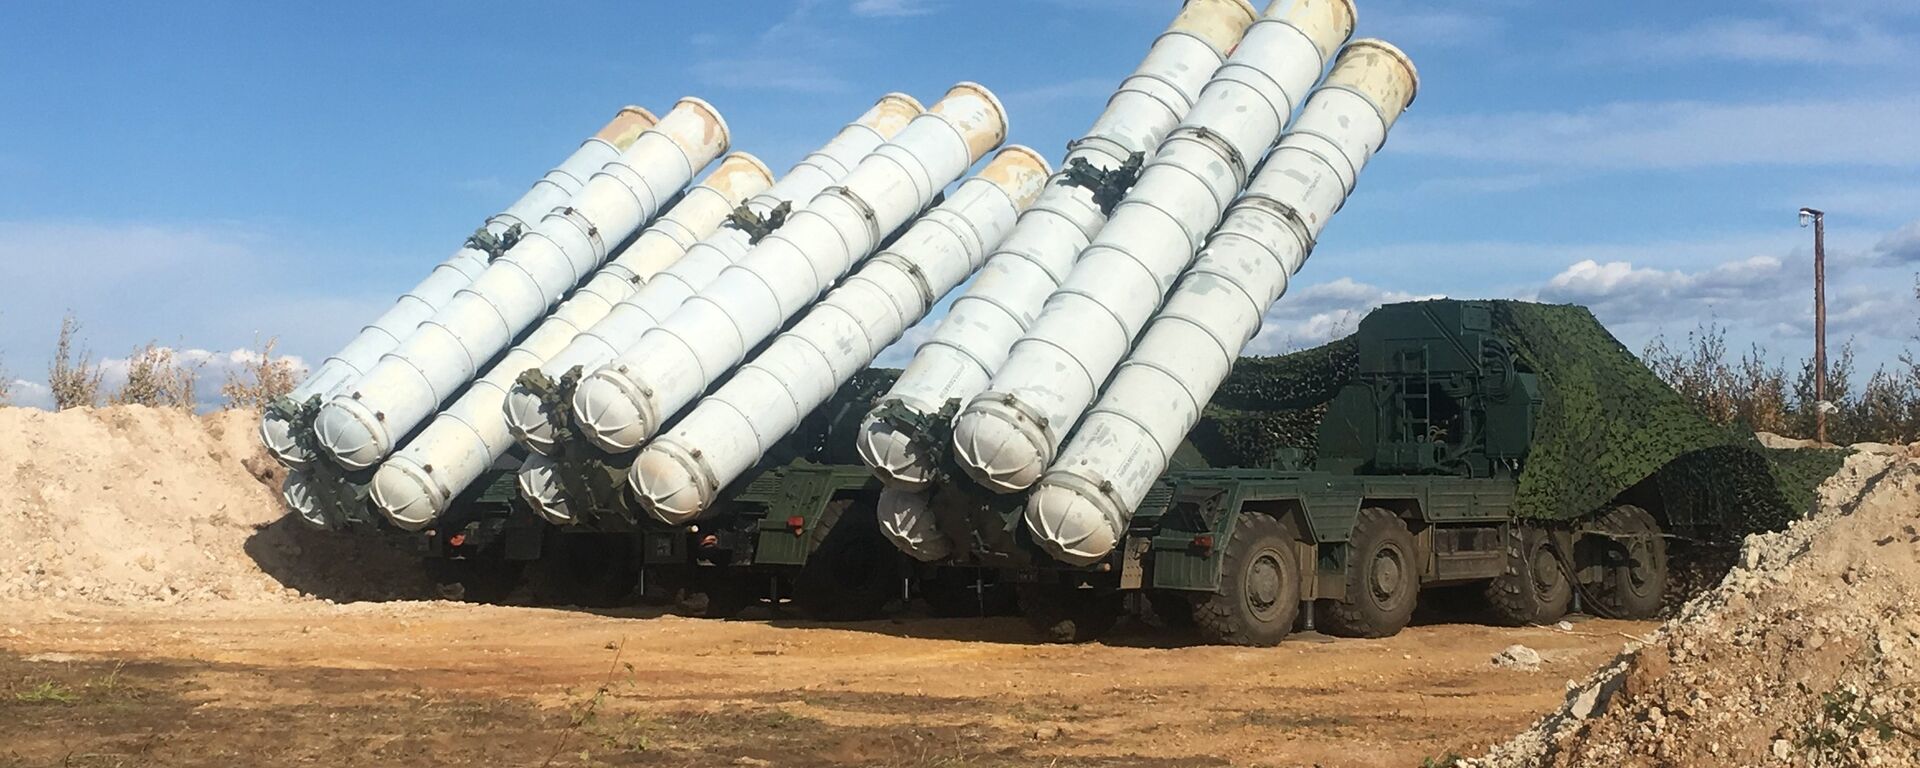 Tổ hợp tên lửa phòng không S-400 Triumph trong giai đoạn cơ bản của cuộc tập trận Vostok- 2018 trên thao trường Tsugol ở vùng Zabaikal. - Sputnik Việt Nam, 1920, 21.10.2021